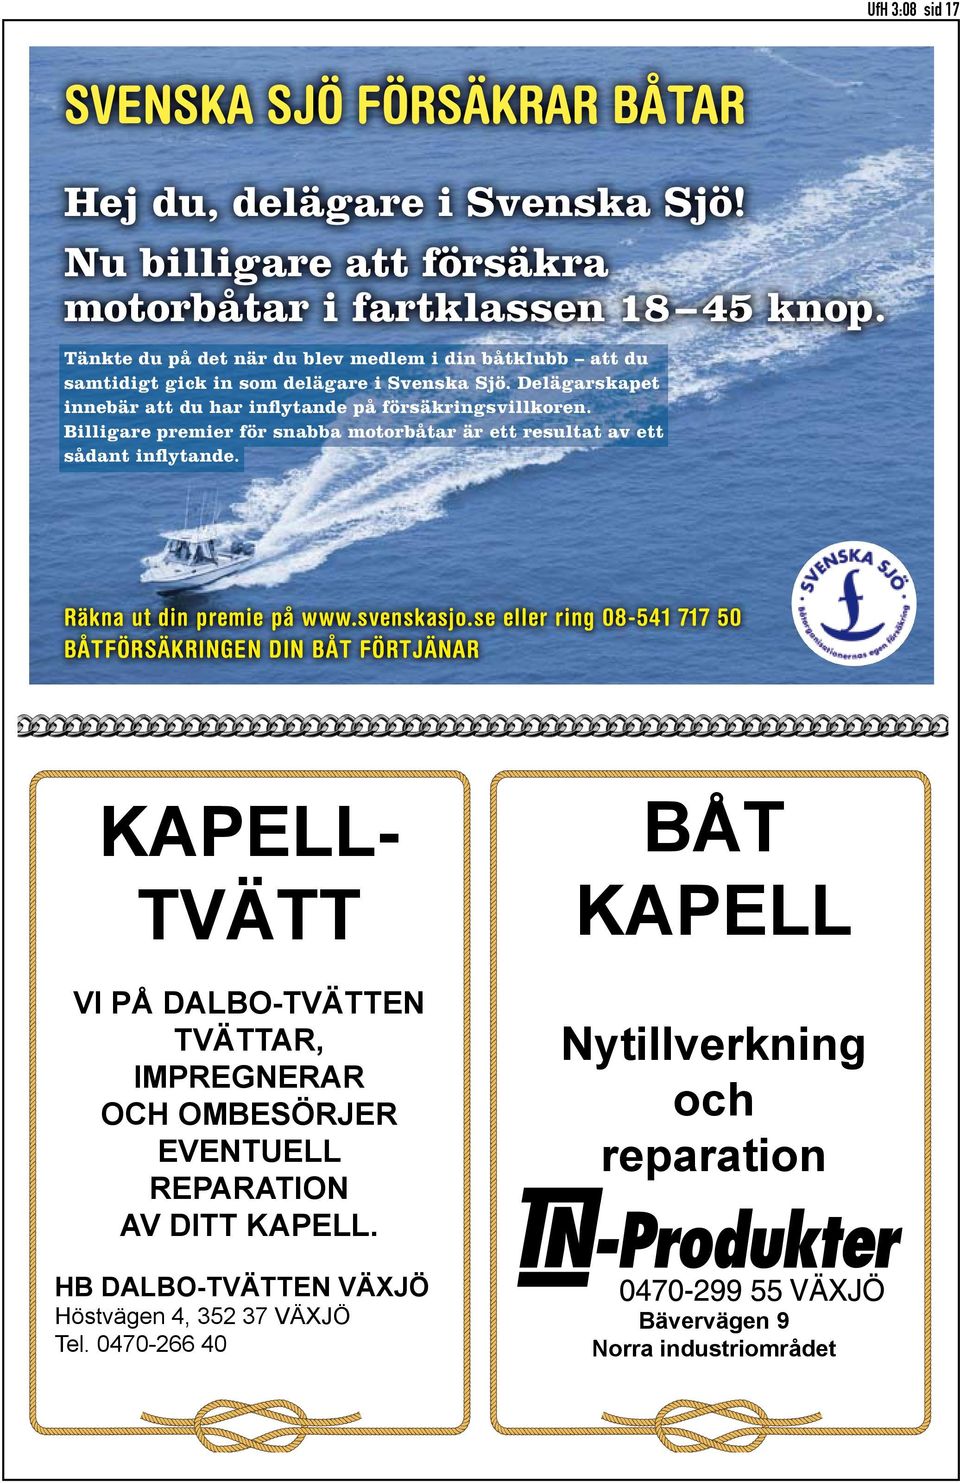 Billigare premier för snabba motorbåtar är ett resultat av ett sådant inflytande. Räkna ut din premie på www.svenskasjo.